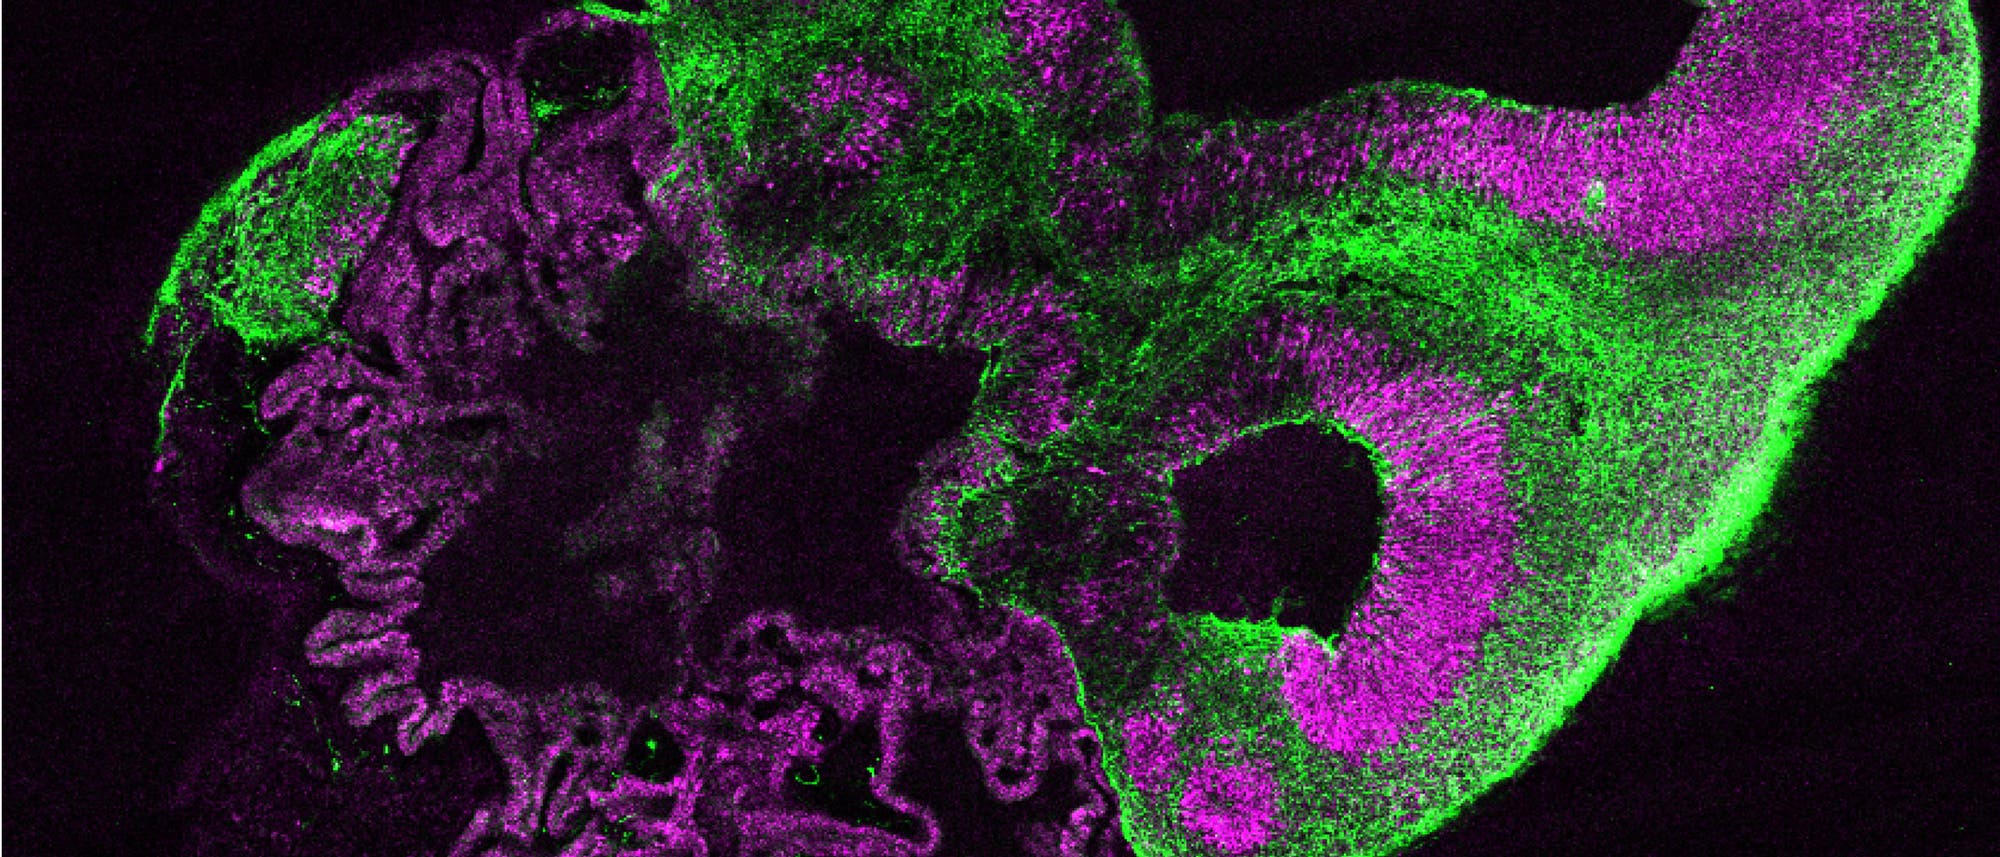 Solche wenige Millimeter großen Gehirnorganoide (hier ein Schnittpräparat) entstehen aus menschlichen pluri- potenten Stammzellen – mit Strukturen, die denen beim Fötus gleichen. Die Farben markieren verschiedene Zellsorten und Hirnbereiche, rechts etwa erkennt man Strukturen einer Großhirnrinde. Neuronale Vorläuferzellen sind rot, Neurone grün.